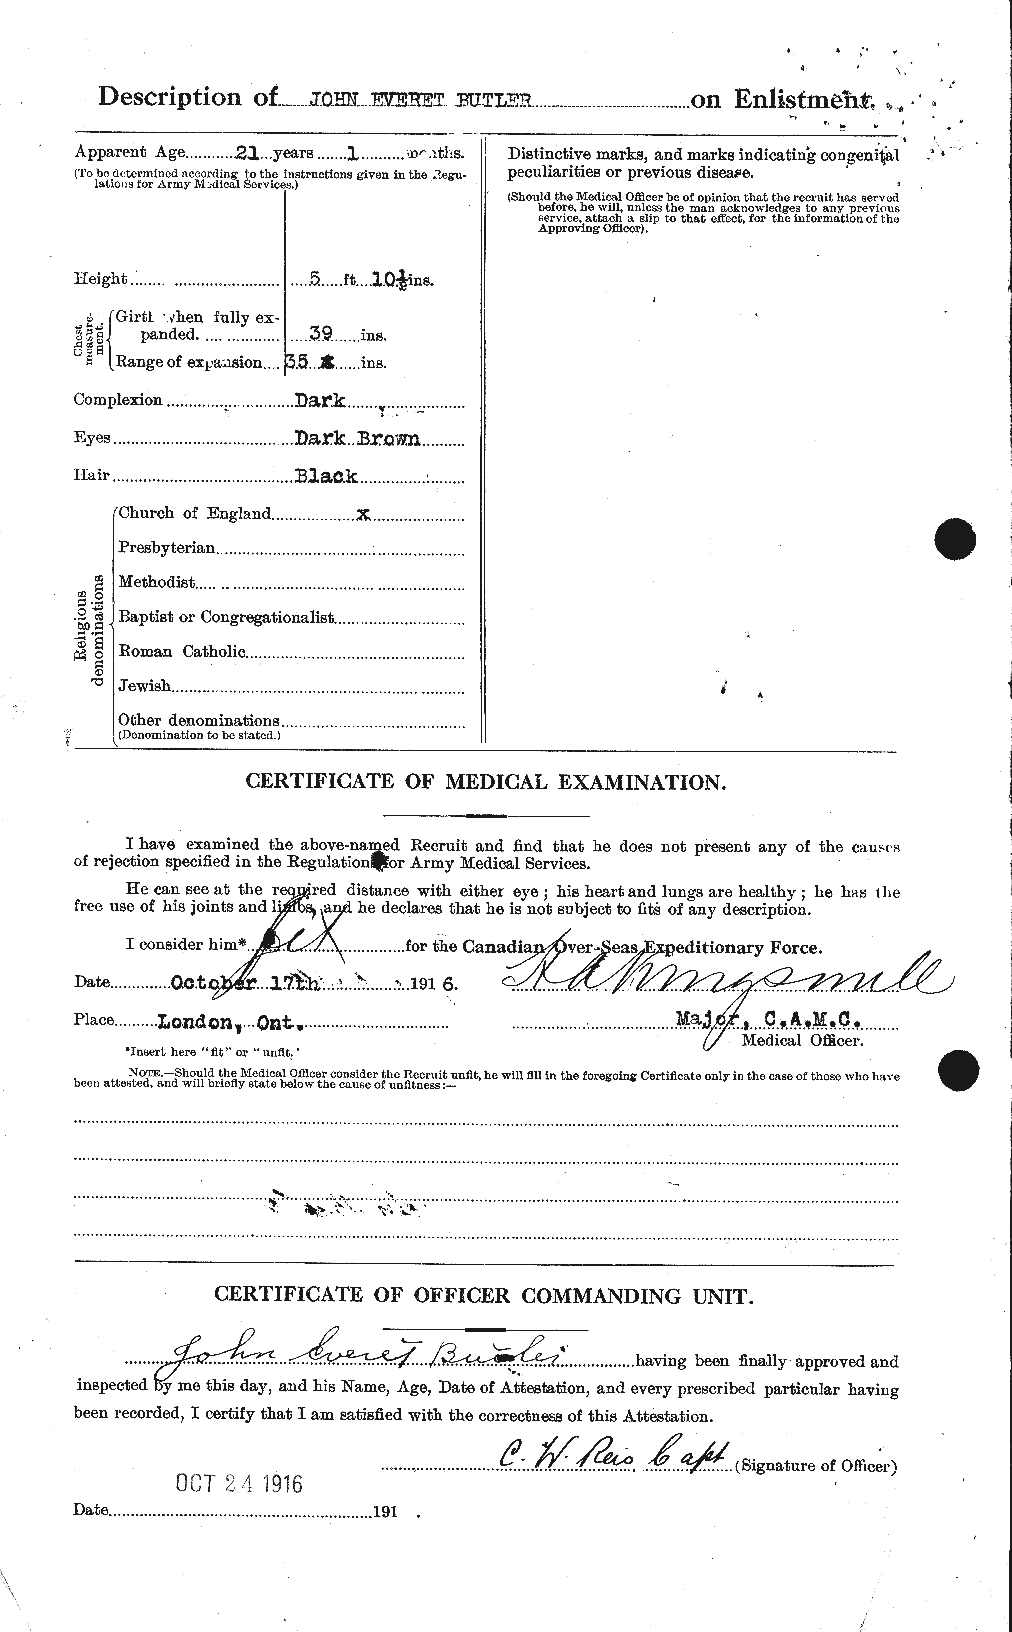 Dossiers du Personnel de la Première Guerre mondiale - CEC 276043b